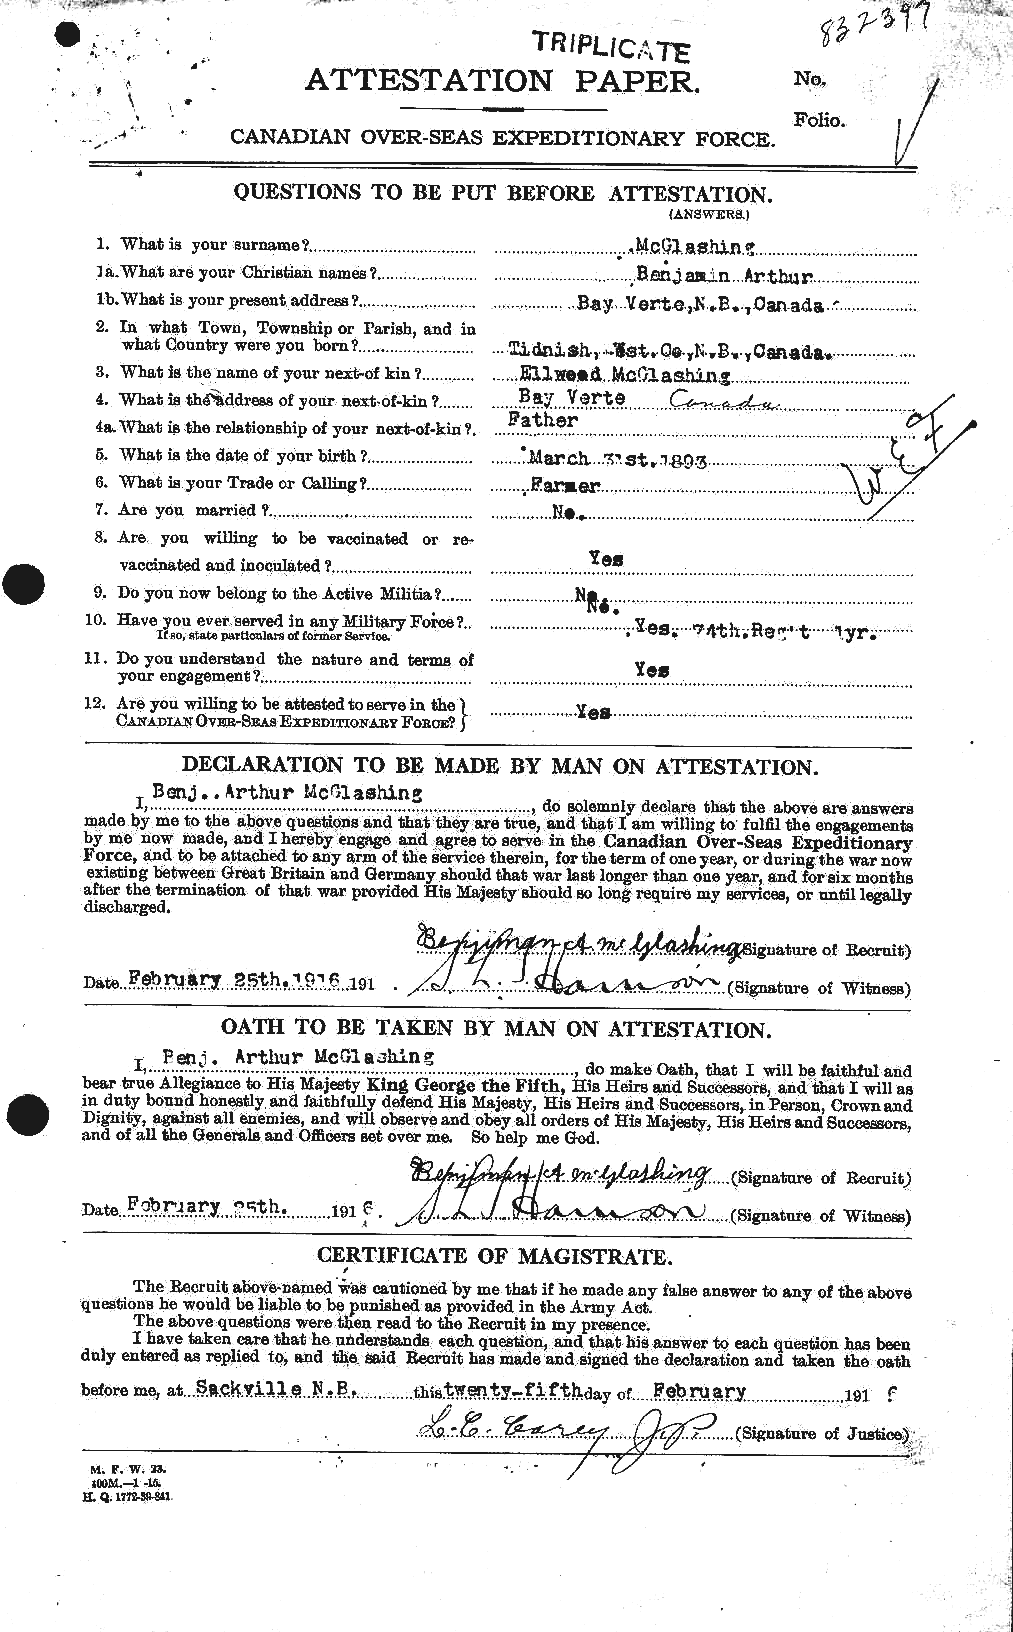 Dossiers du Personnel de la Première Guerre mondiale - CEC 528424a